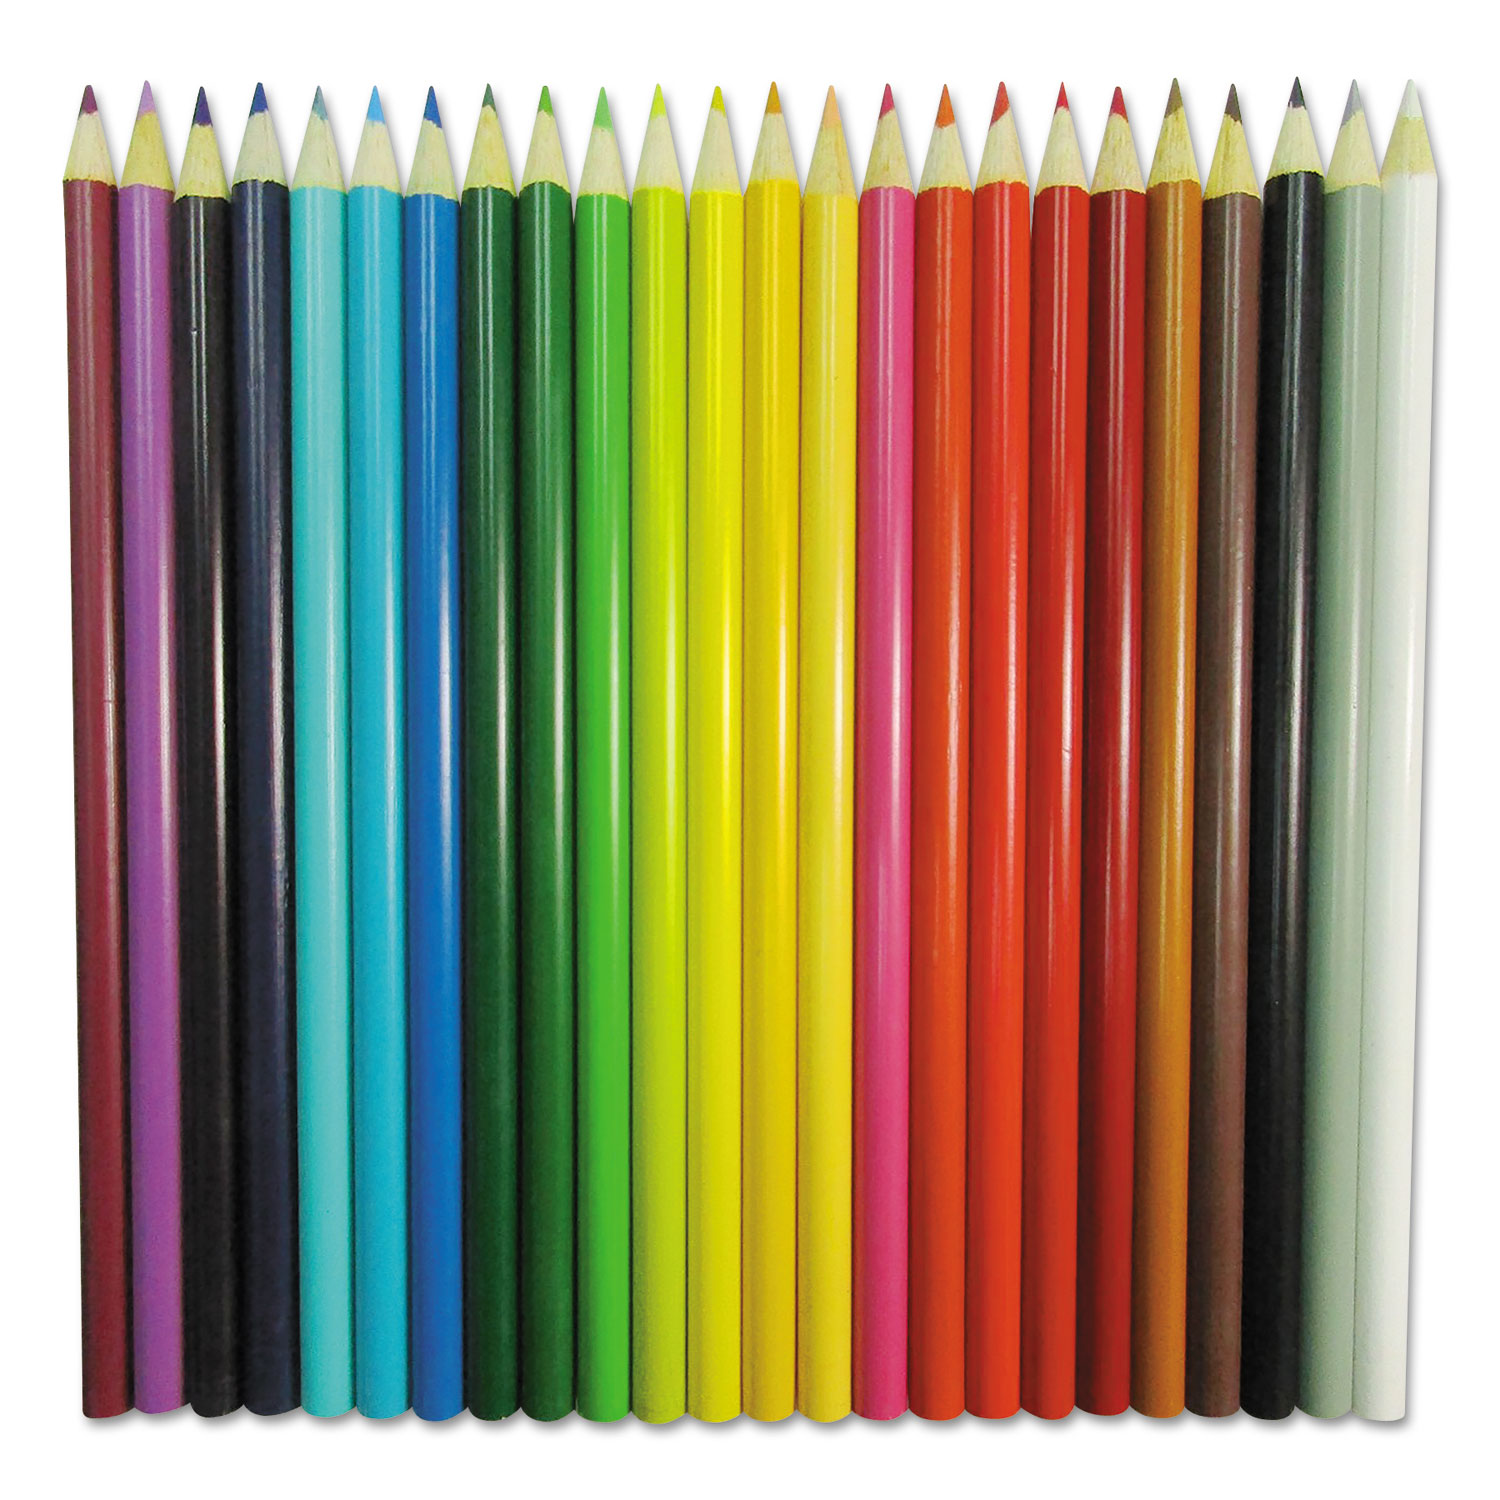 Wax-Based Marking Pencil, 4.4 mm, Black Wax, Navy Blue Barrel, 10/Box